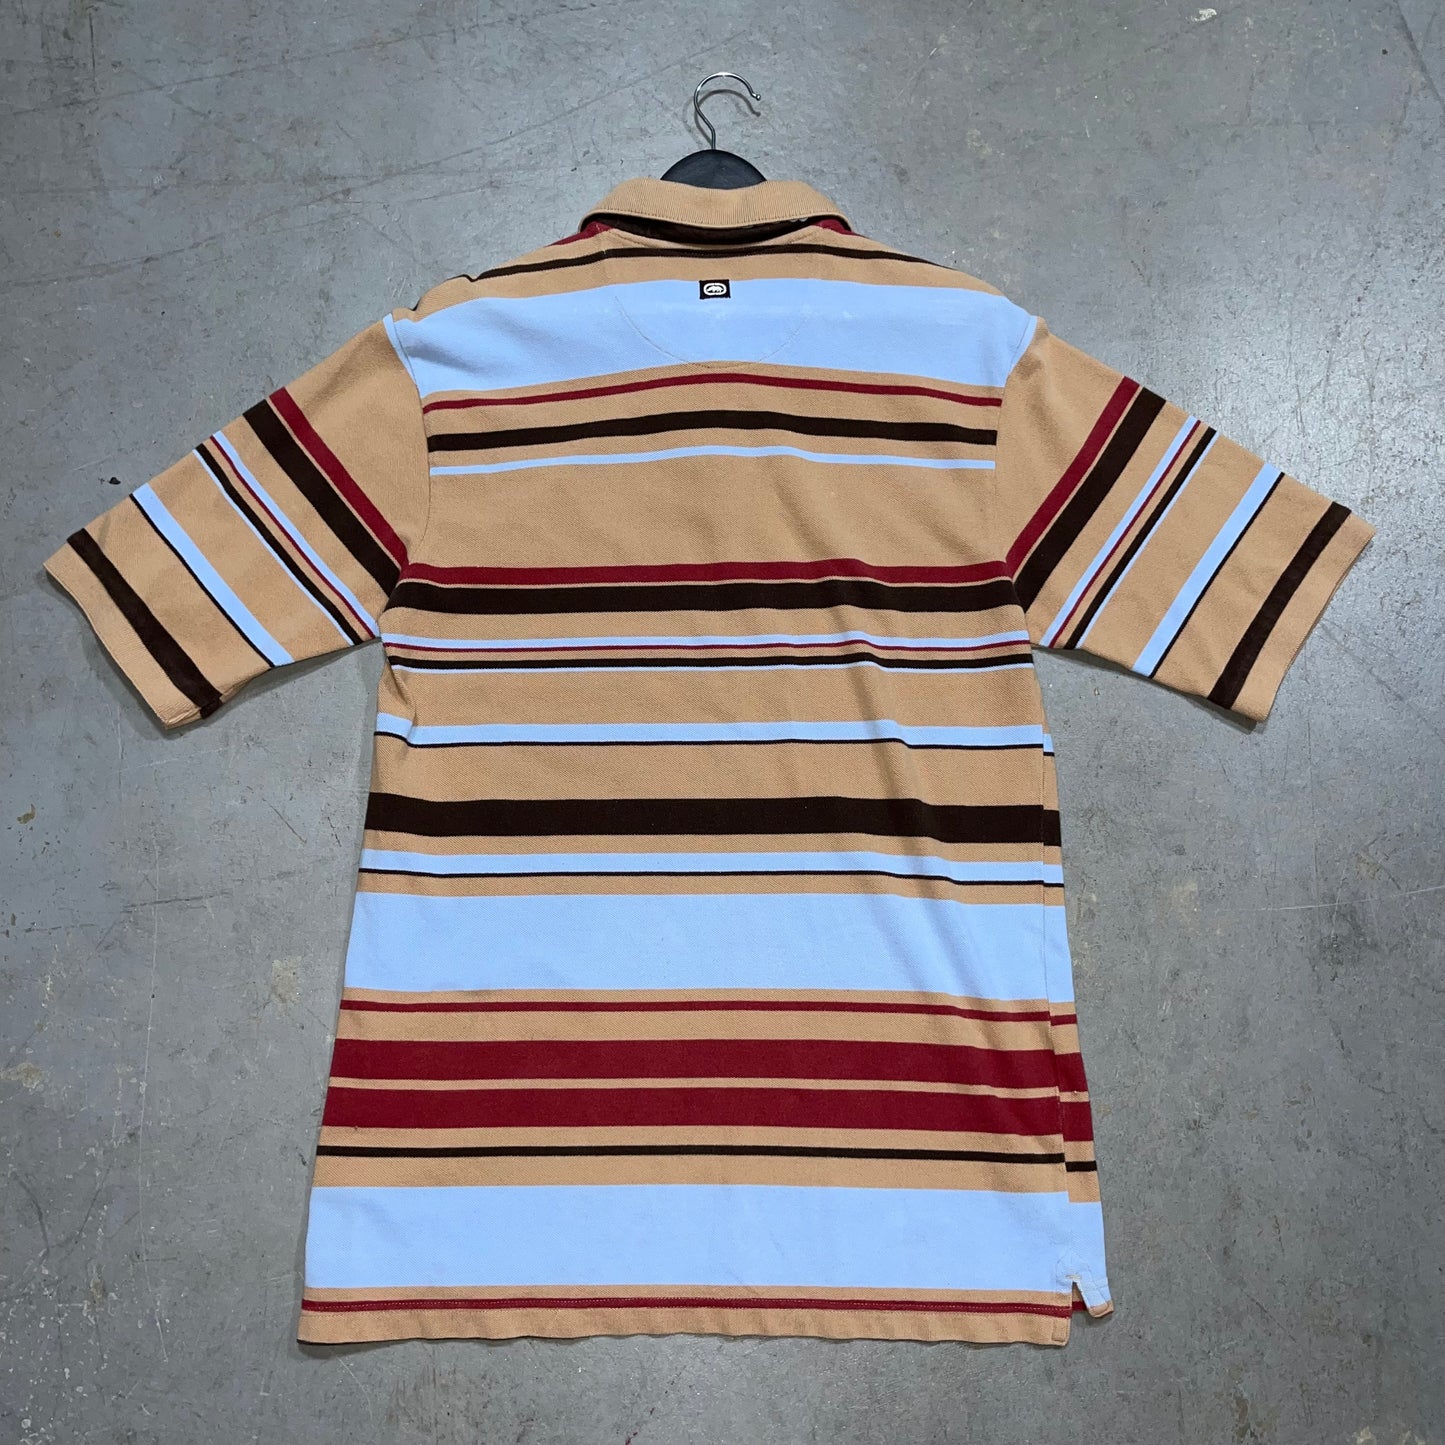 Y2K Ecko UNLTD. Striped Polo Shirt. Size Medium